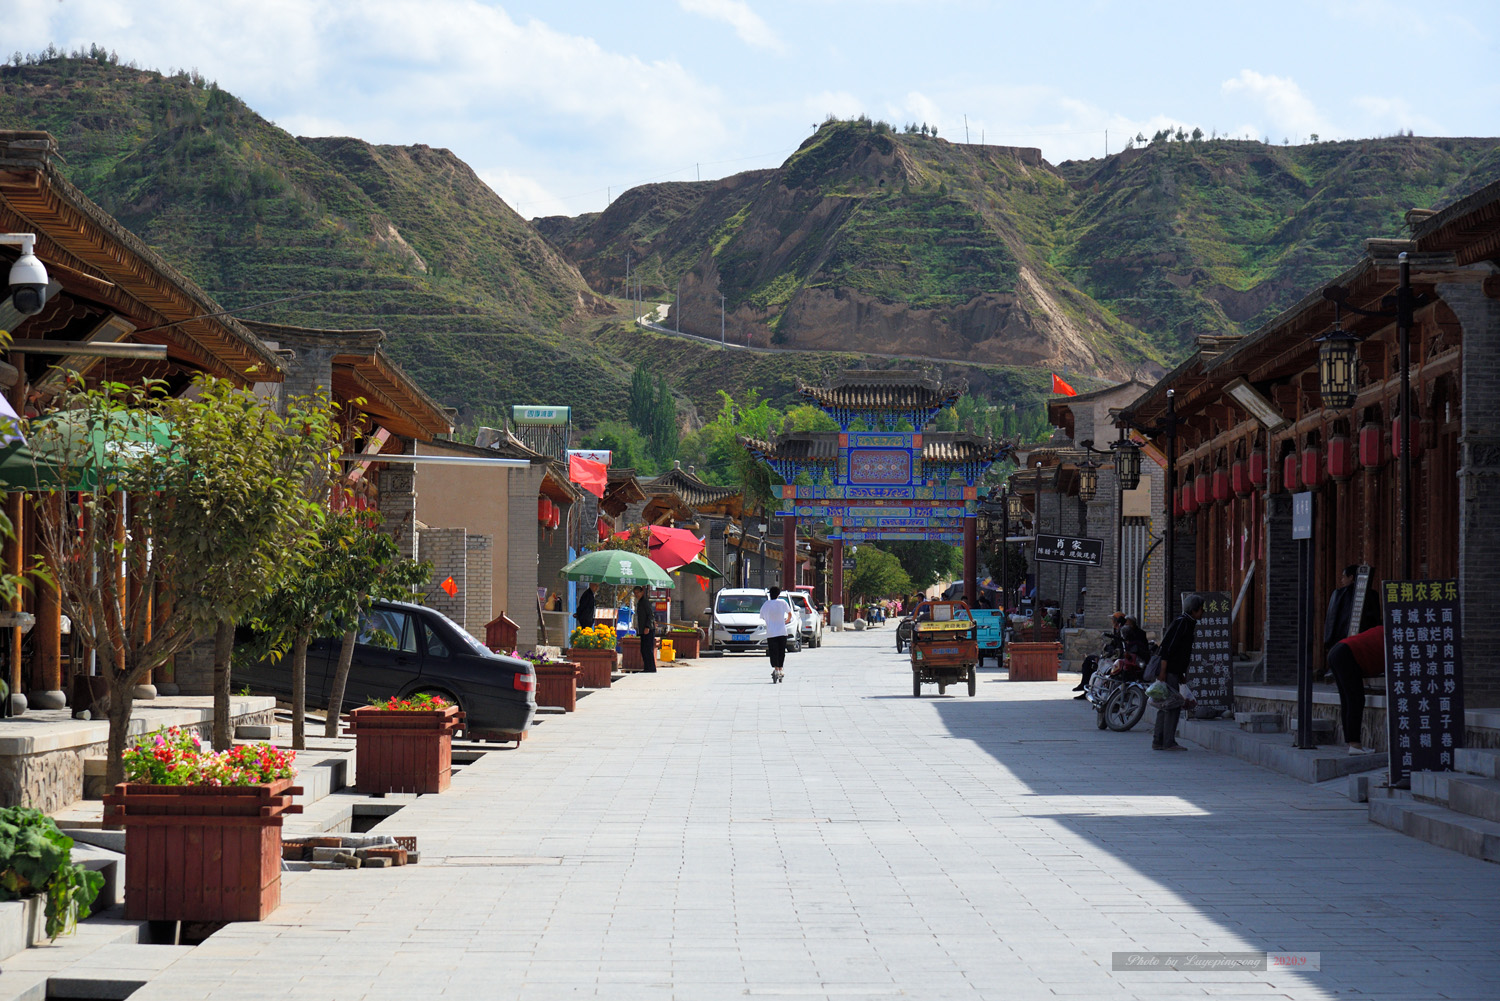 青城古镇位于甘肃省兰州市榆中县最北端的黄河南岸,是兰州市唯一的